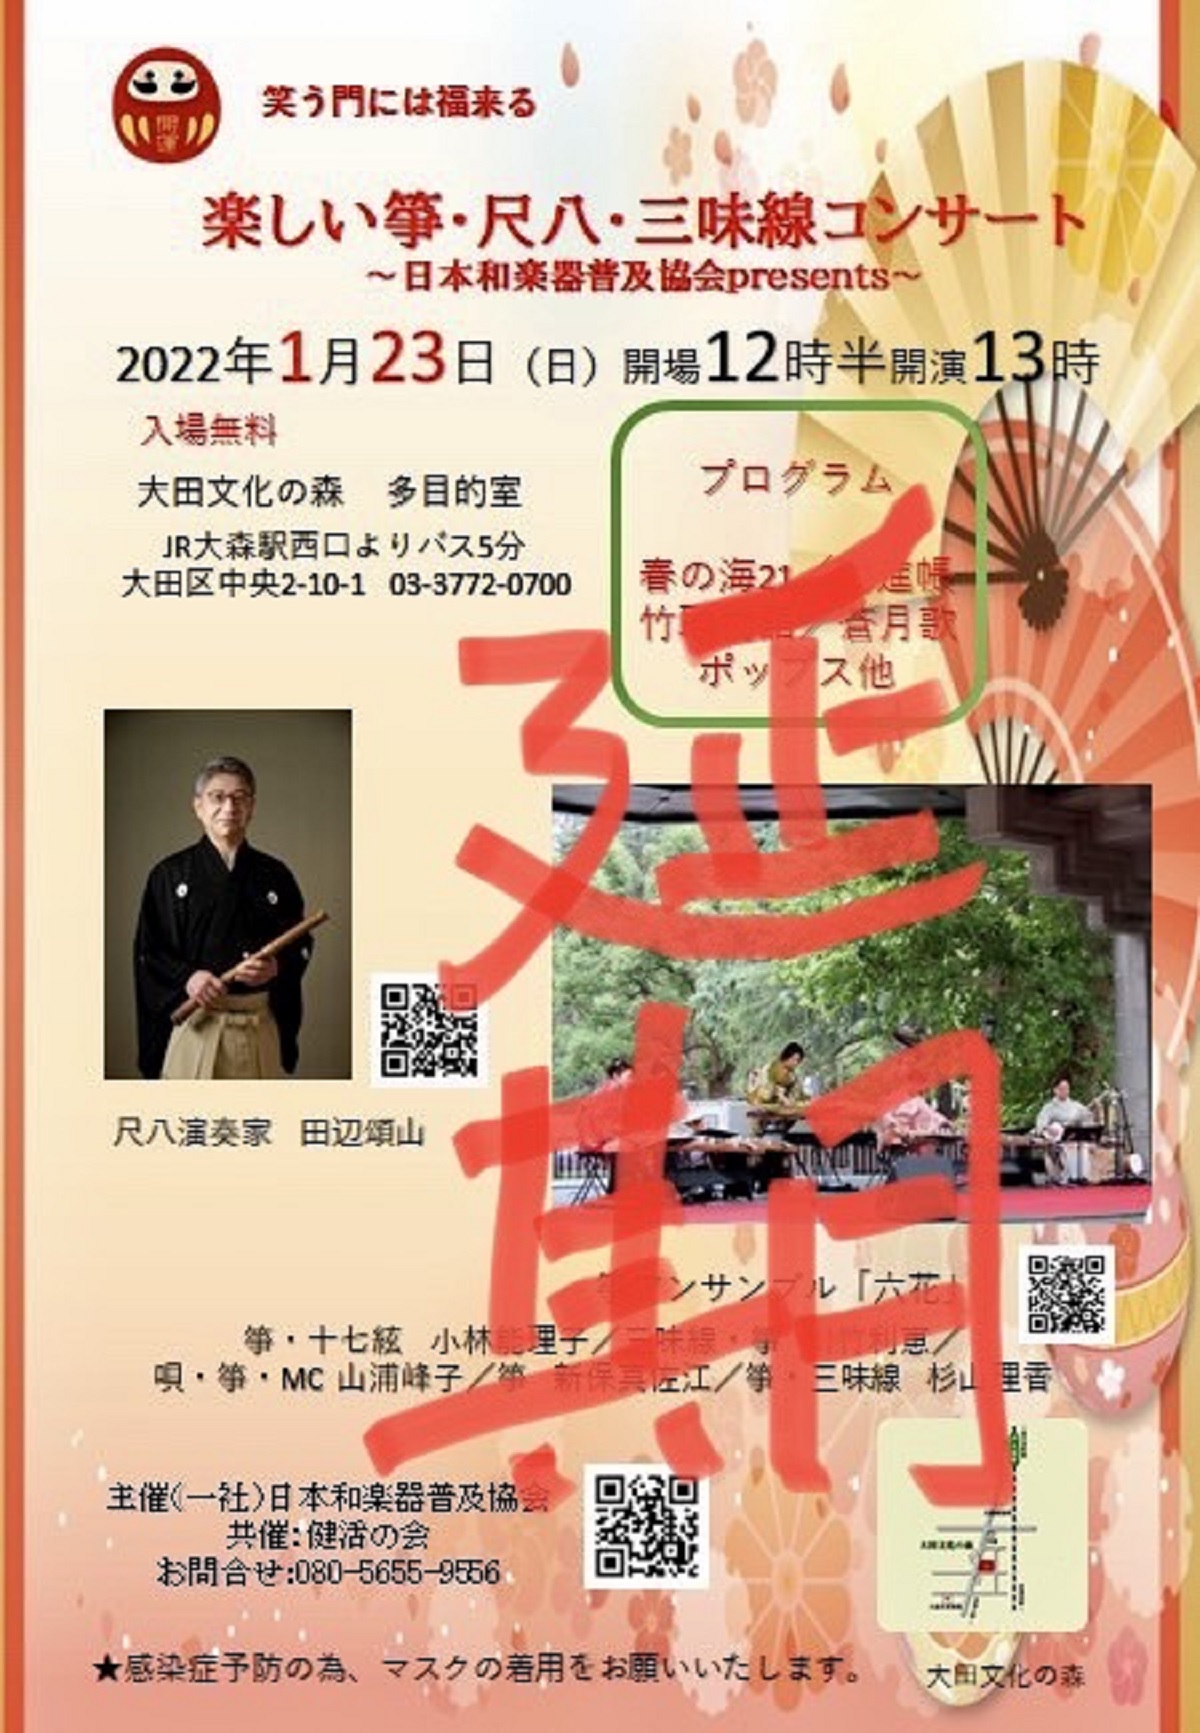 【延期】楽しい箏・尺八・三味線コンサート